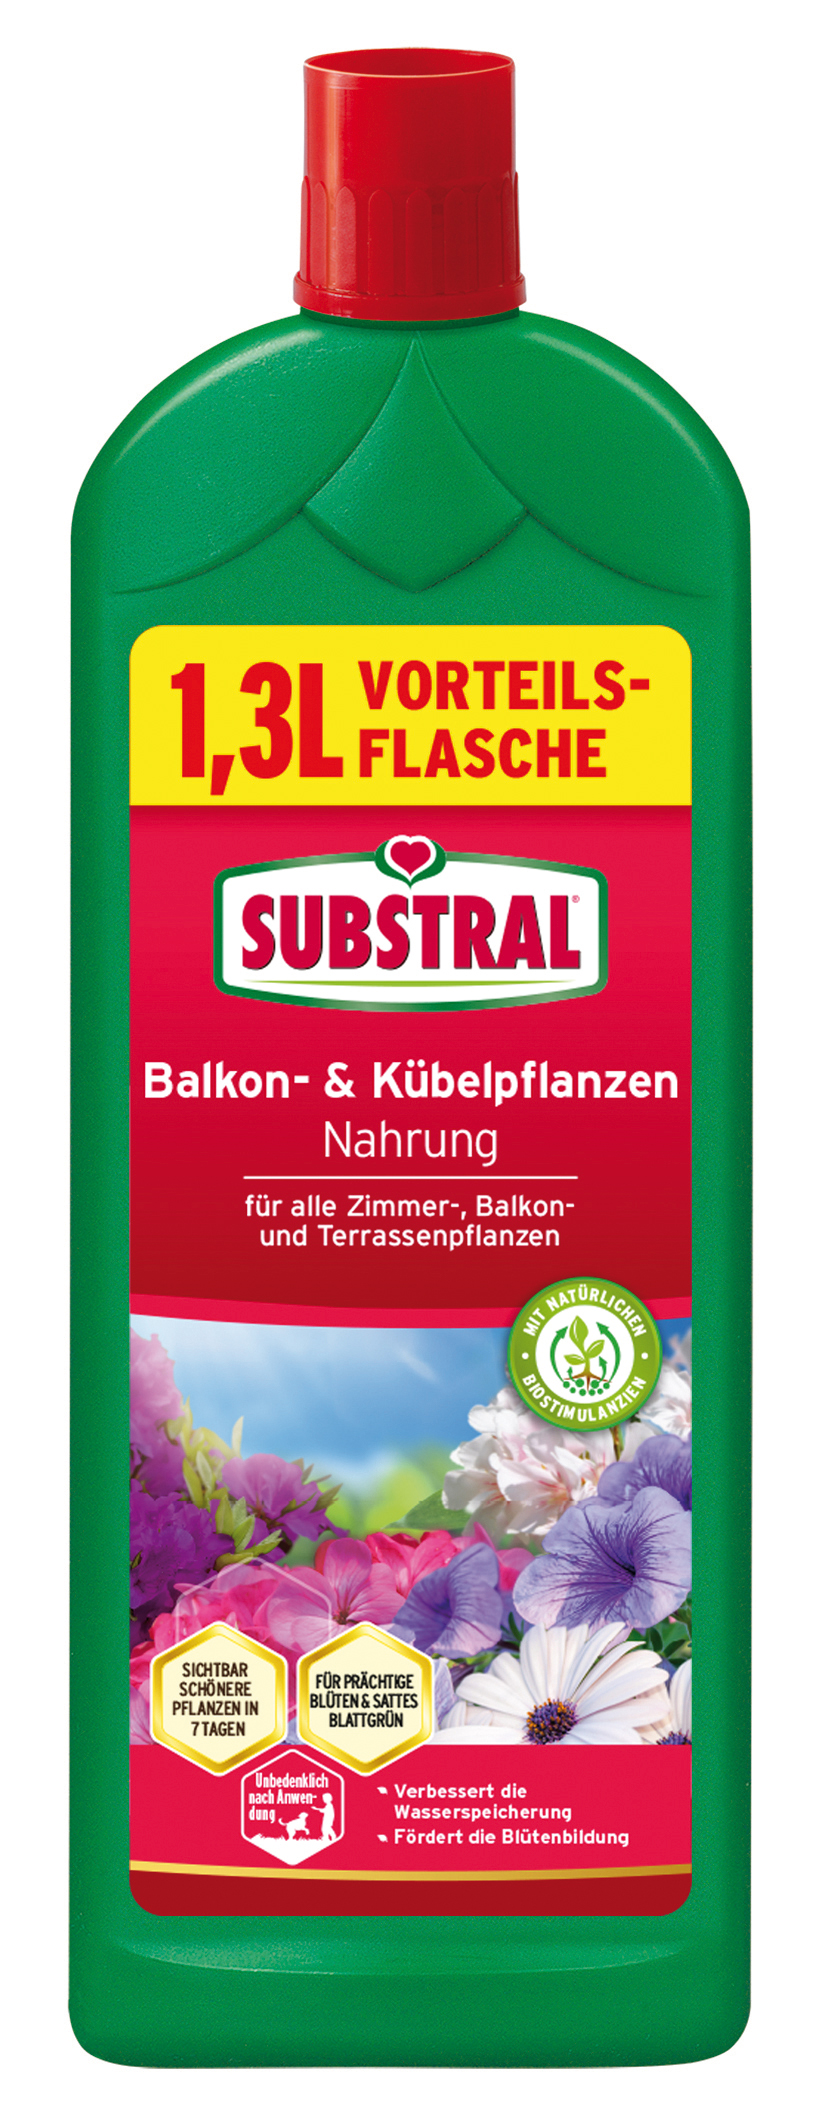 CELAFLOR Substral Balkon+Kübelpfl.-Nahrung 1,3l Celaflor